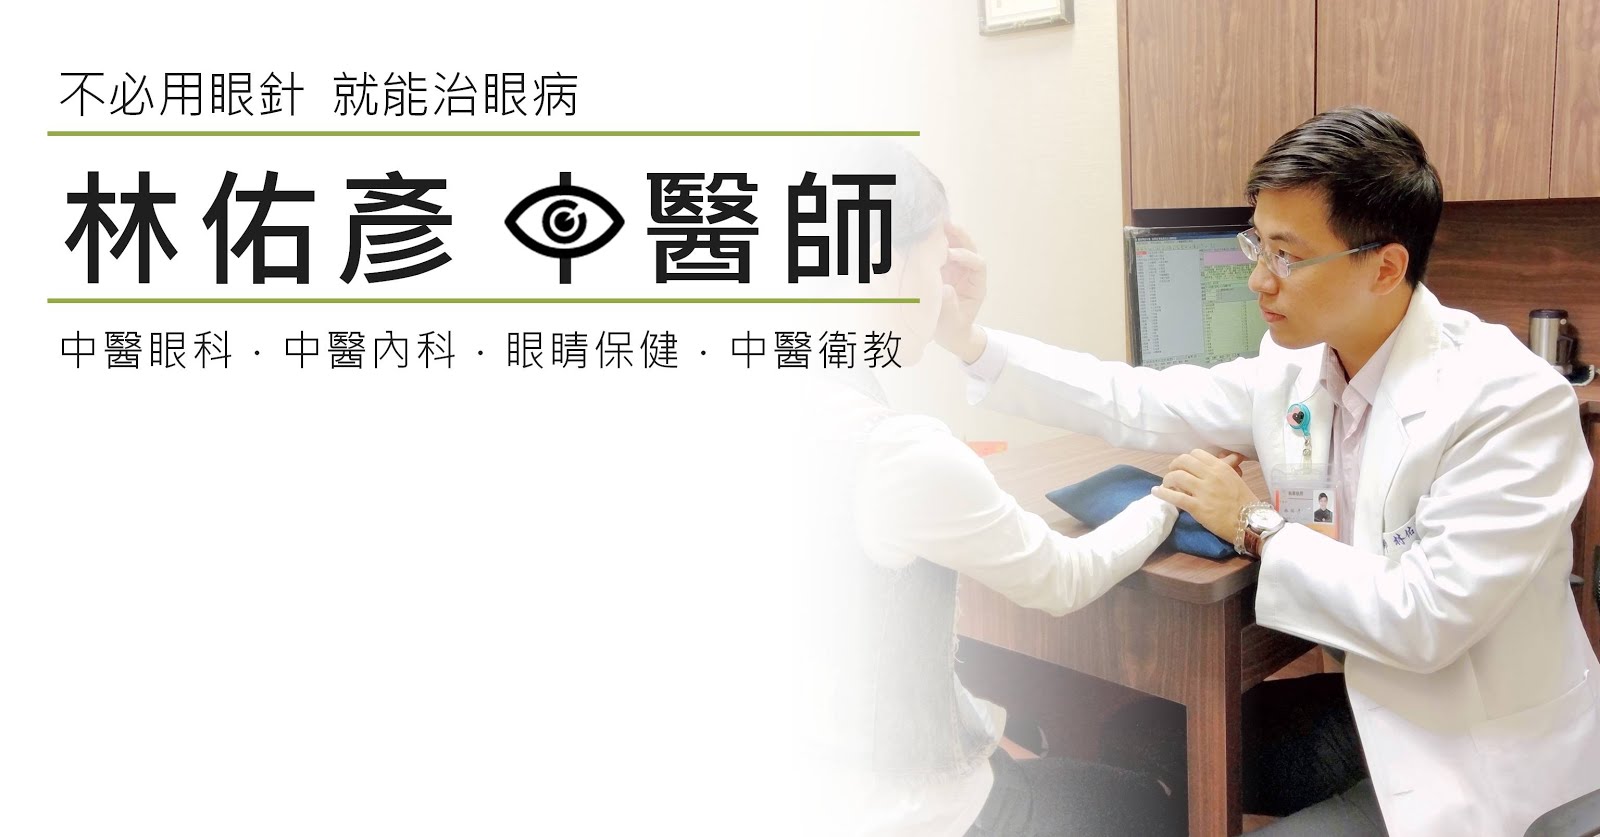 中醫眼科,眼睛的中醫治療保健,中醫治眼病,林佑彥中醫師 | Yu-Yen Lin, MD